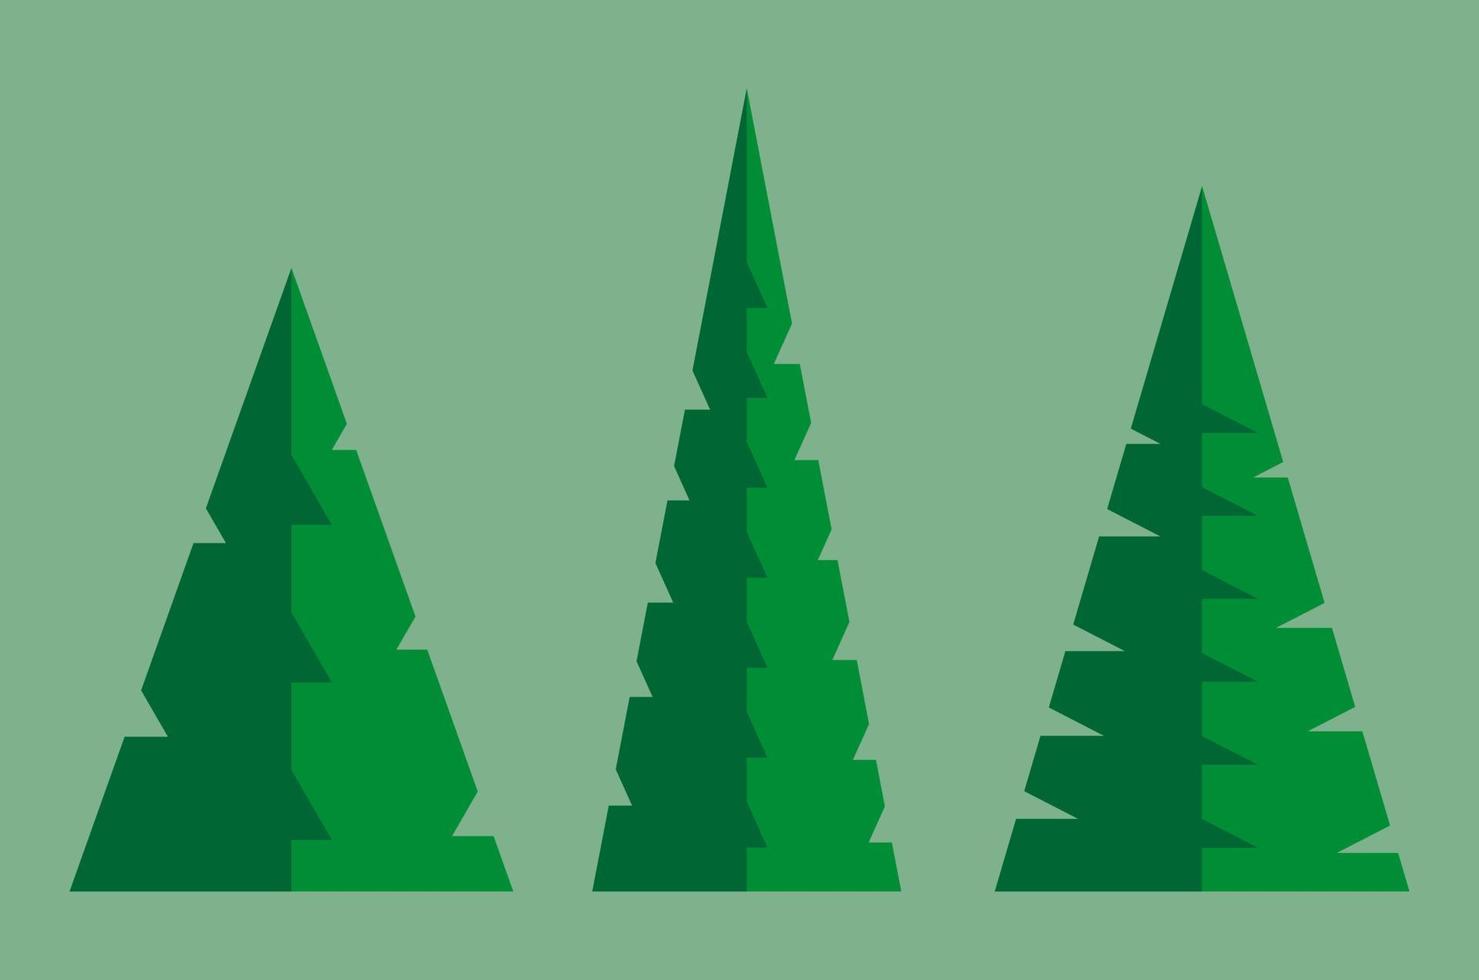 een eenvoudige abstracte vectorillustratie van drie driehoekige naaldbomen op lichtgroene achtergrond. vector